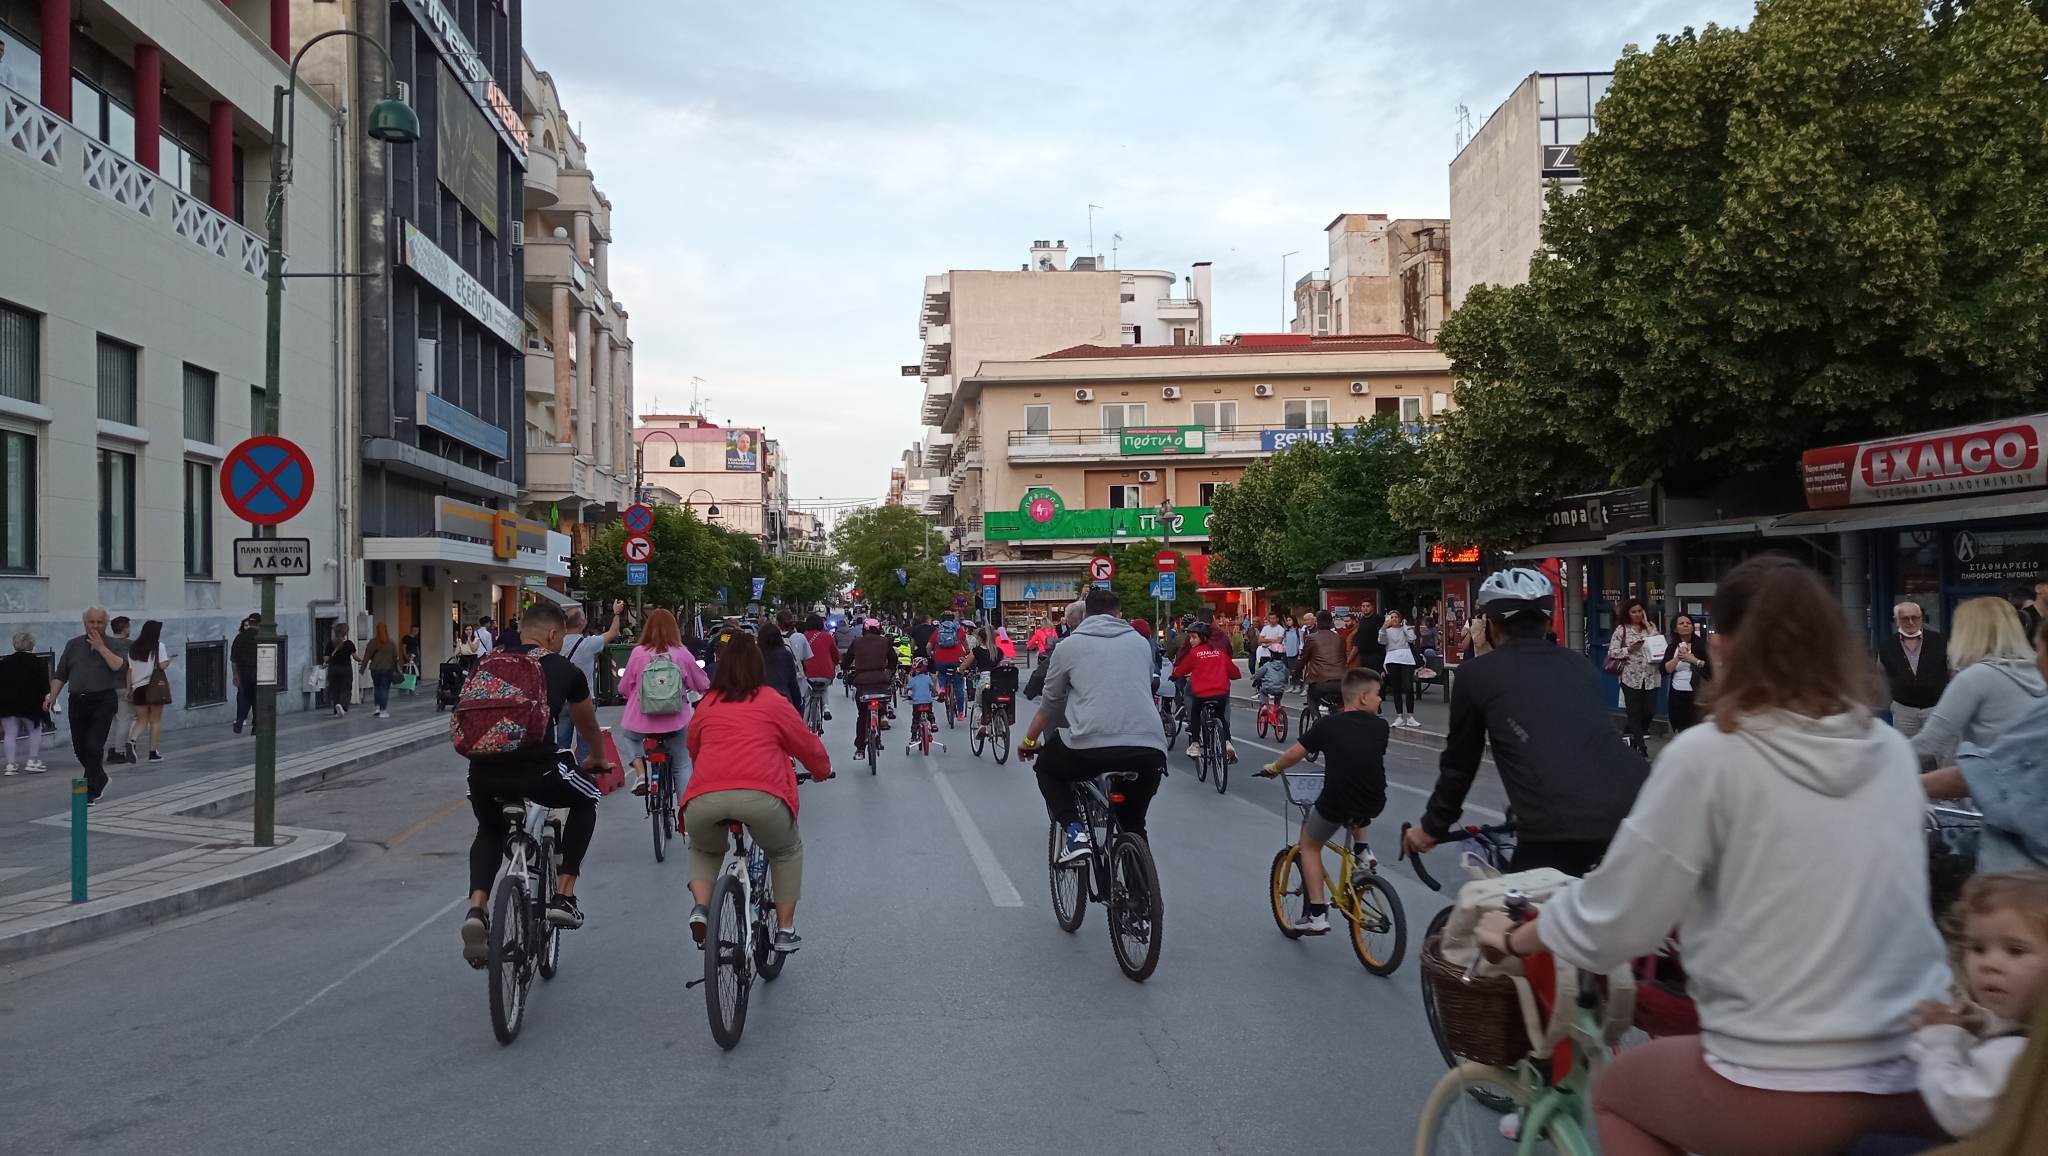 Μεγάλη ποδηλατοβόλτα στη Λάρισα - Πλήθος κόσμου συμμετείχε (ΦΩΤΟ)